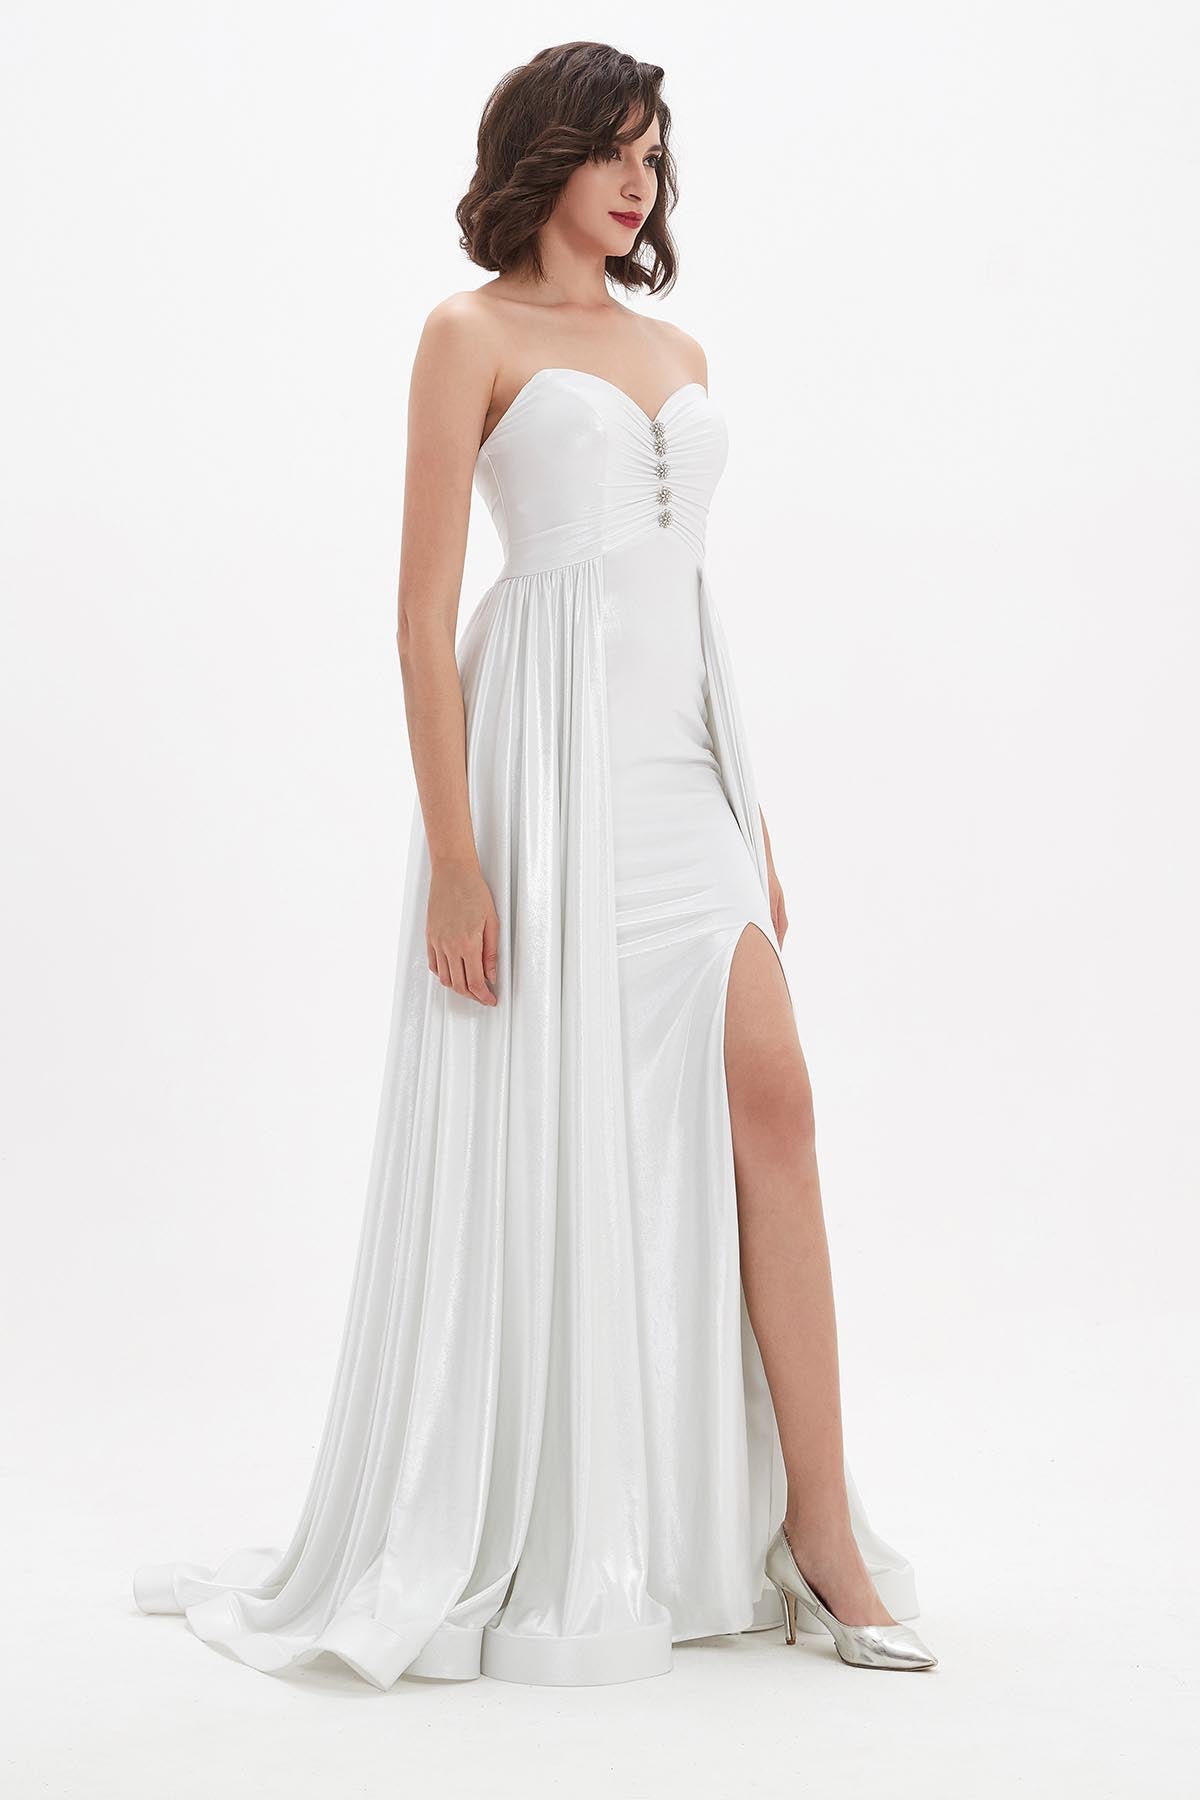 A-line Sweetheart Sleeveless Full Length Polyester Wedding Dresses